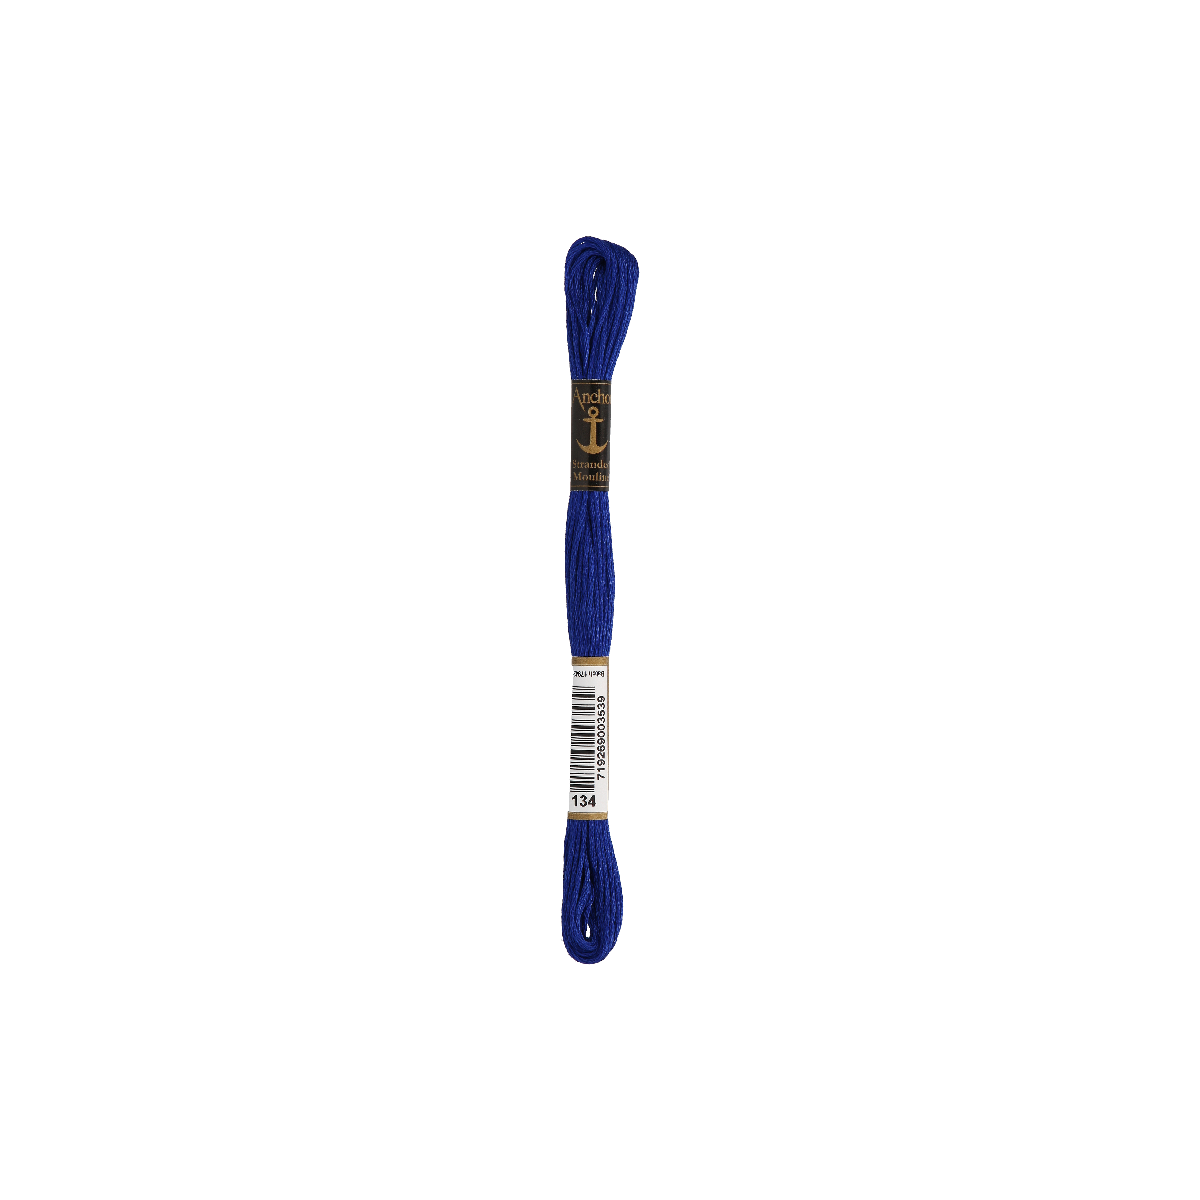 Anchor Sticktwist 8m, dunkelblau, Baumwolle, Farbe 134,...